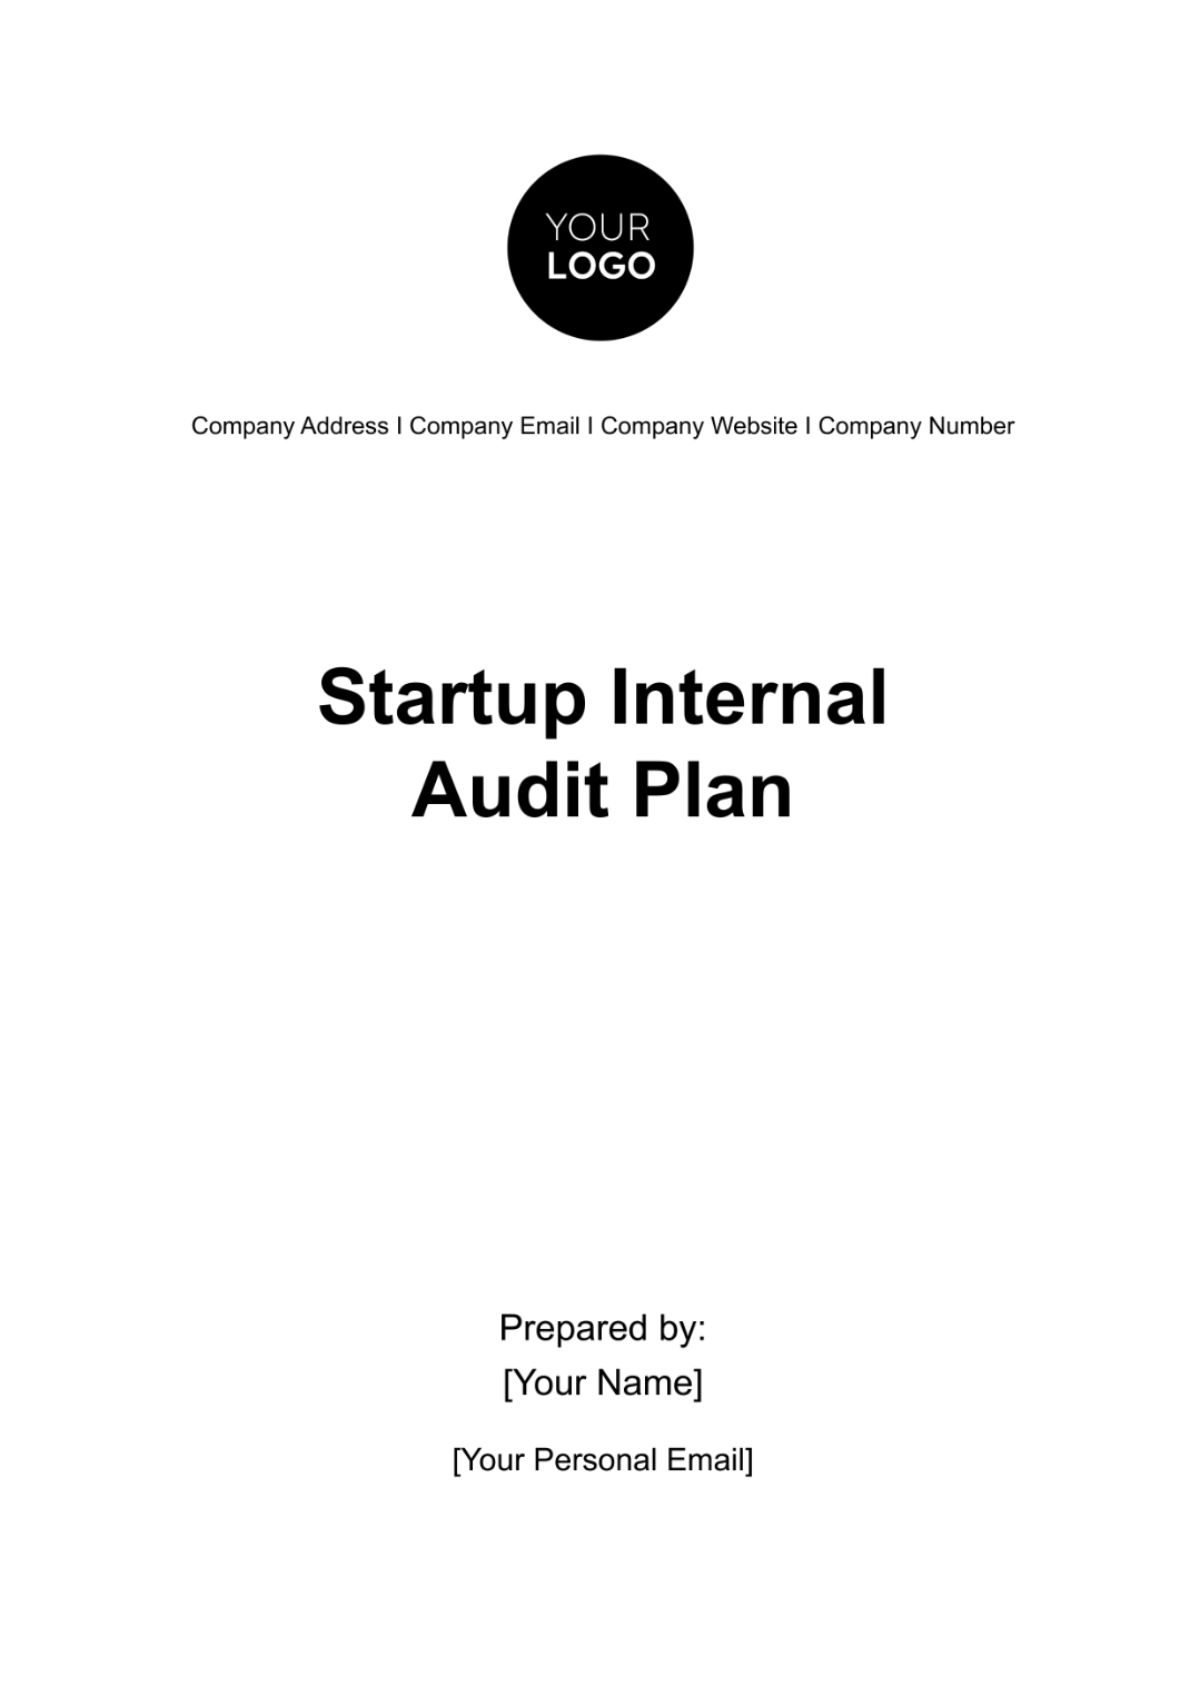 Free Startup Internal Audit Plan Template